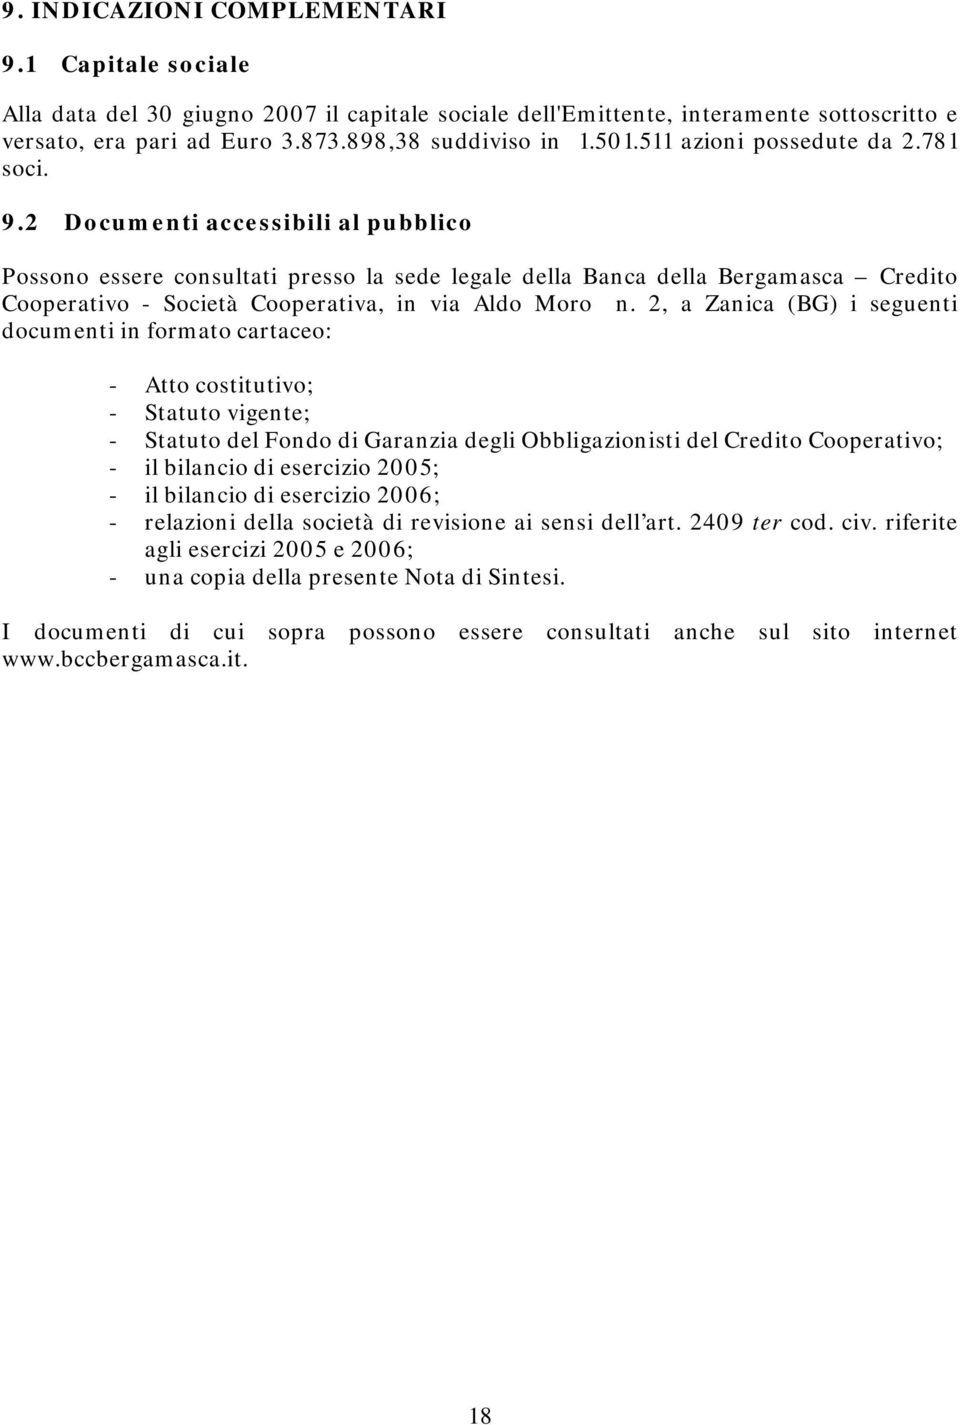 2 Documenti accessibili al pubblico Possono essere consultati presso la sede legale della Banca della Bergamasca Credito Cooperativo - Società Cooperativa, in via Aldo Moro n.